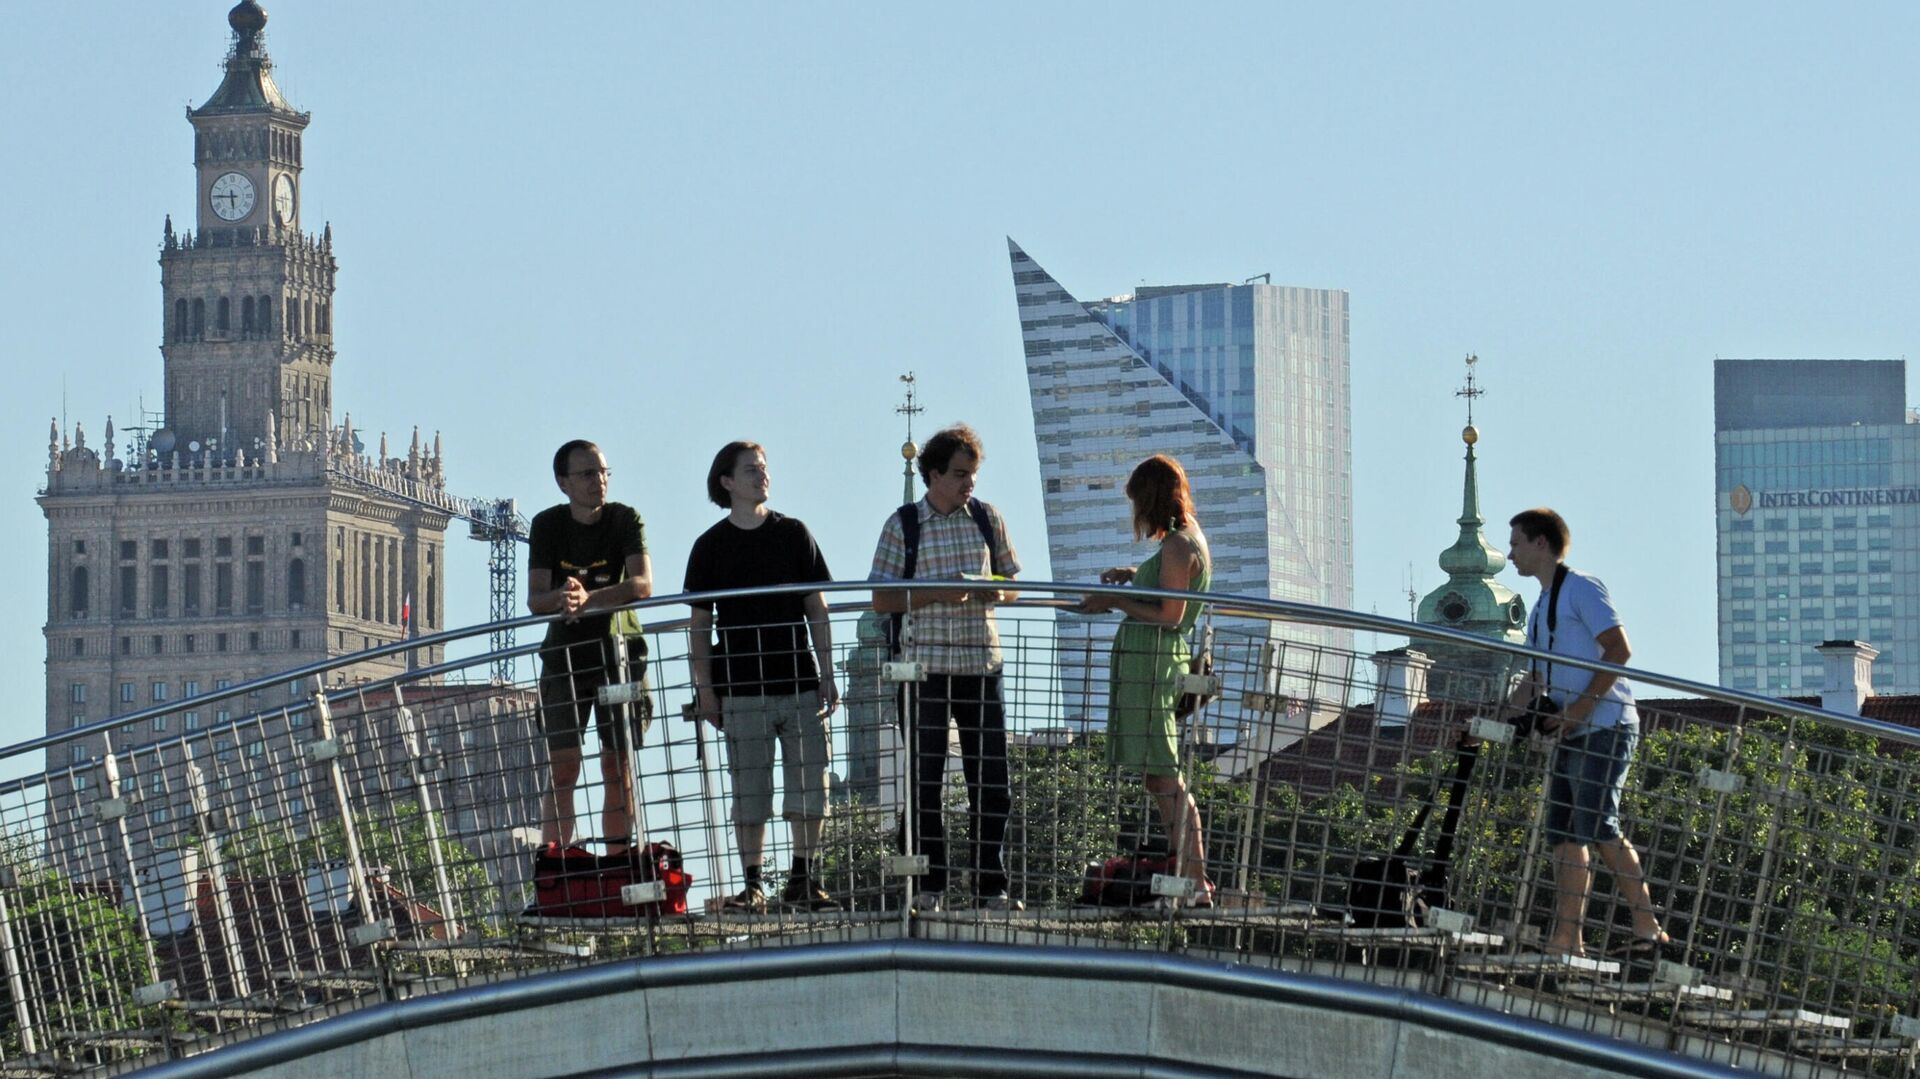 Посетители на крыше библиотеки Варшавского университета, Польша - РИА Новости, 1920, 09.07.2021